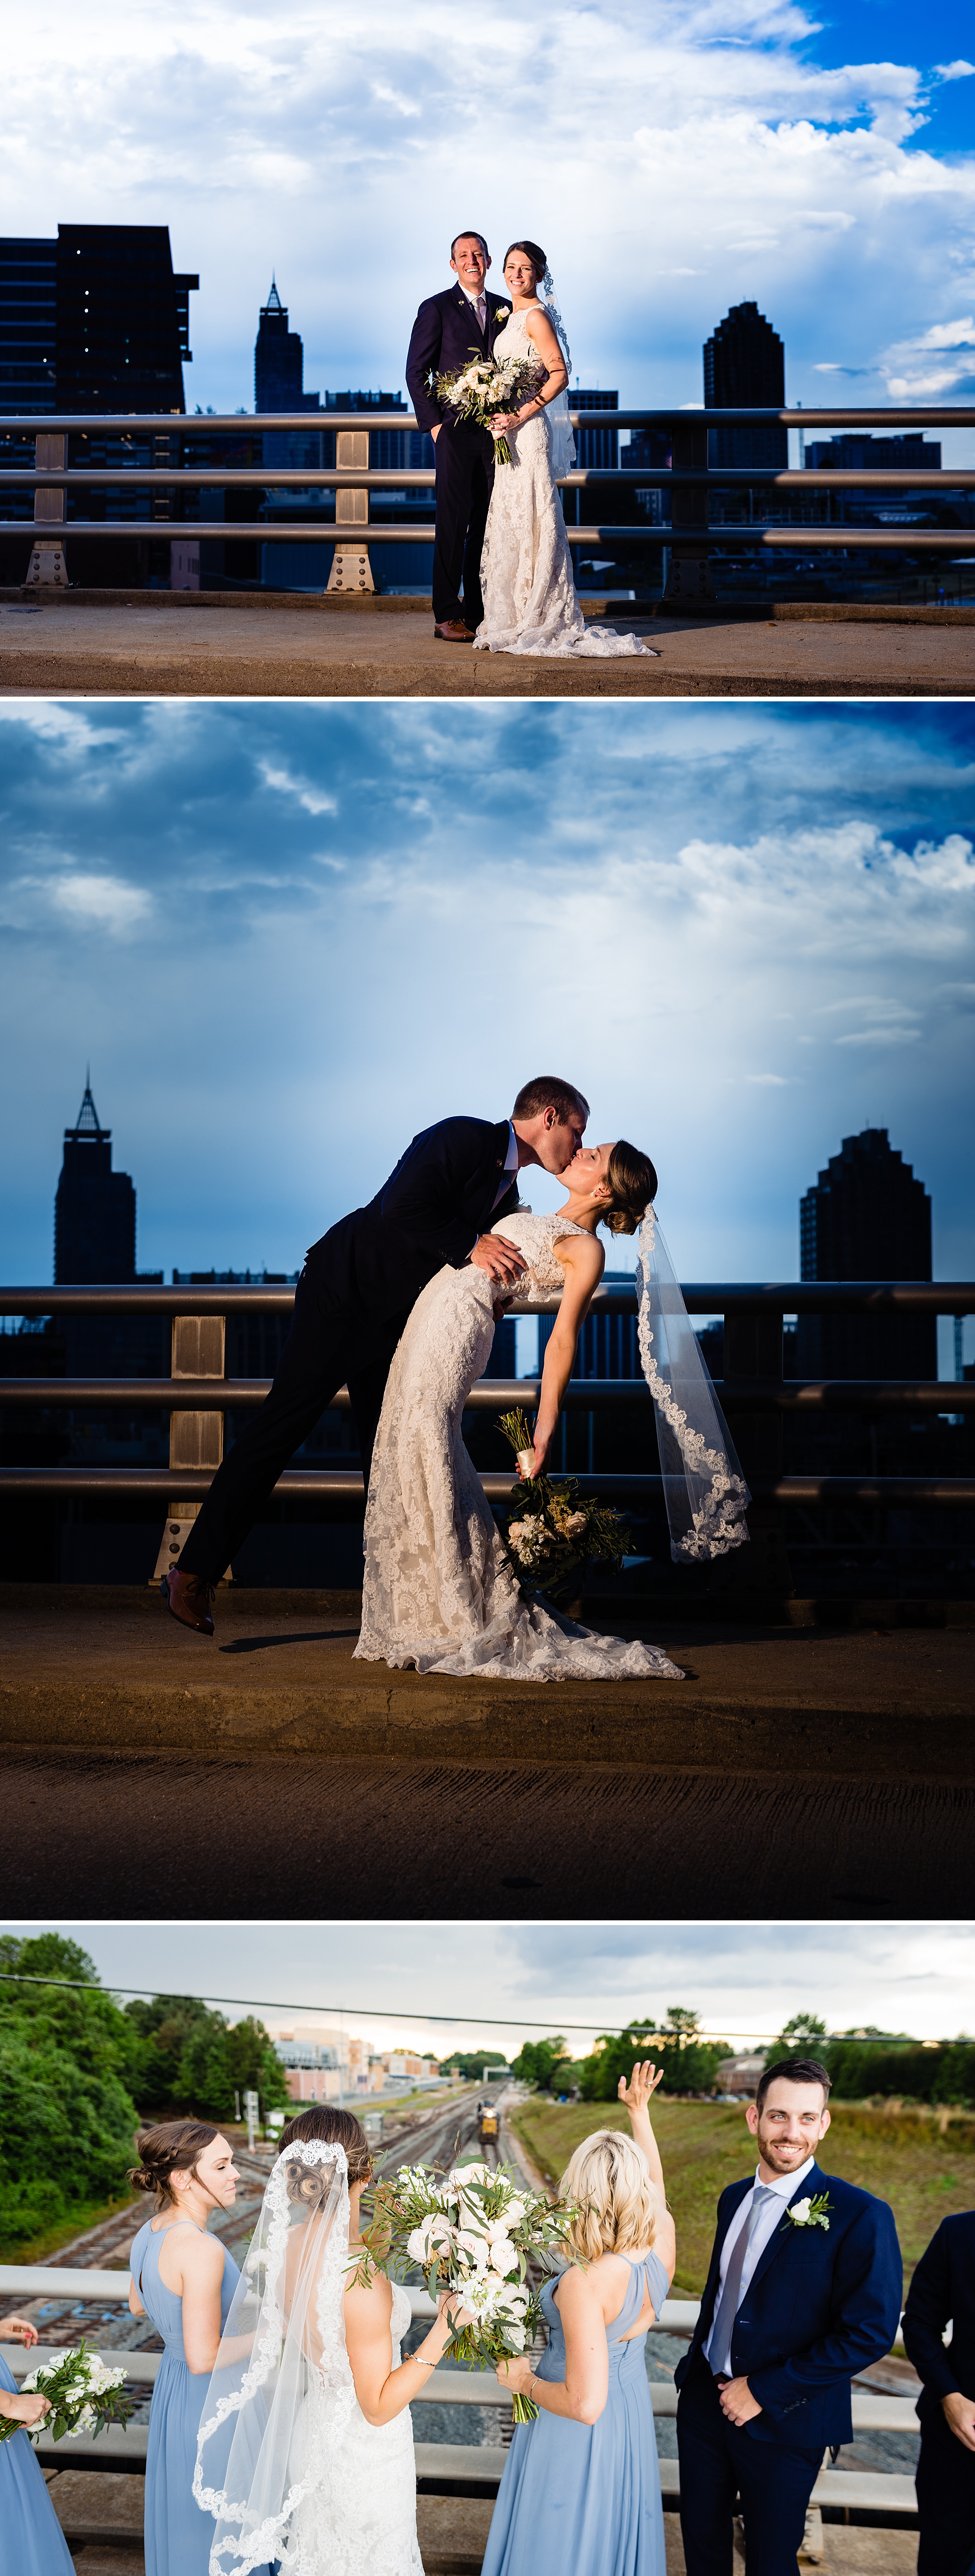 Boylan Bridge Wedding Photography